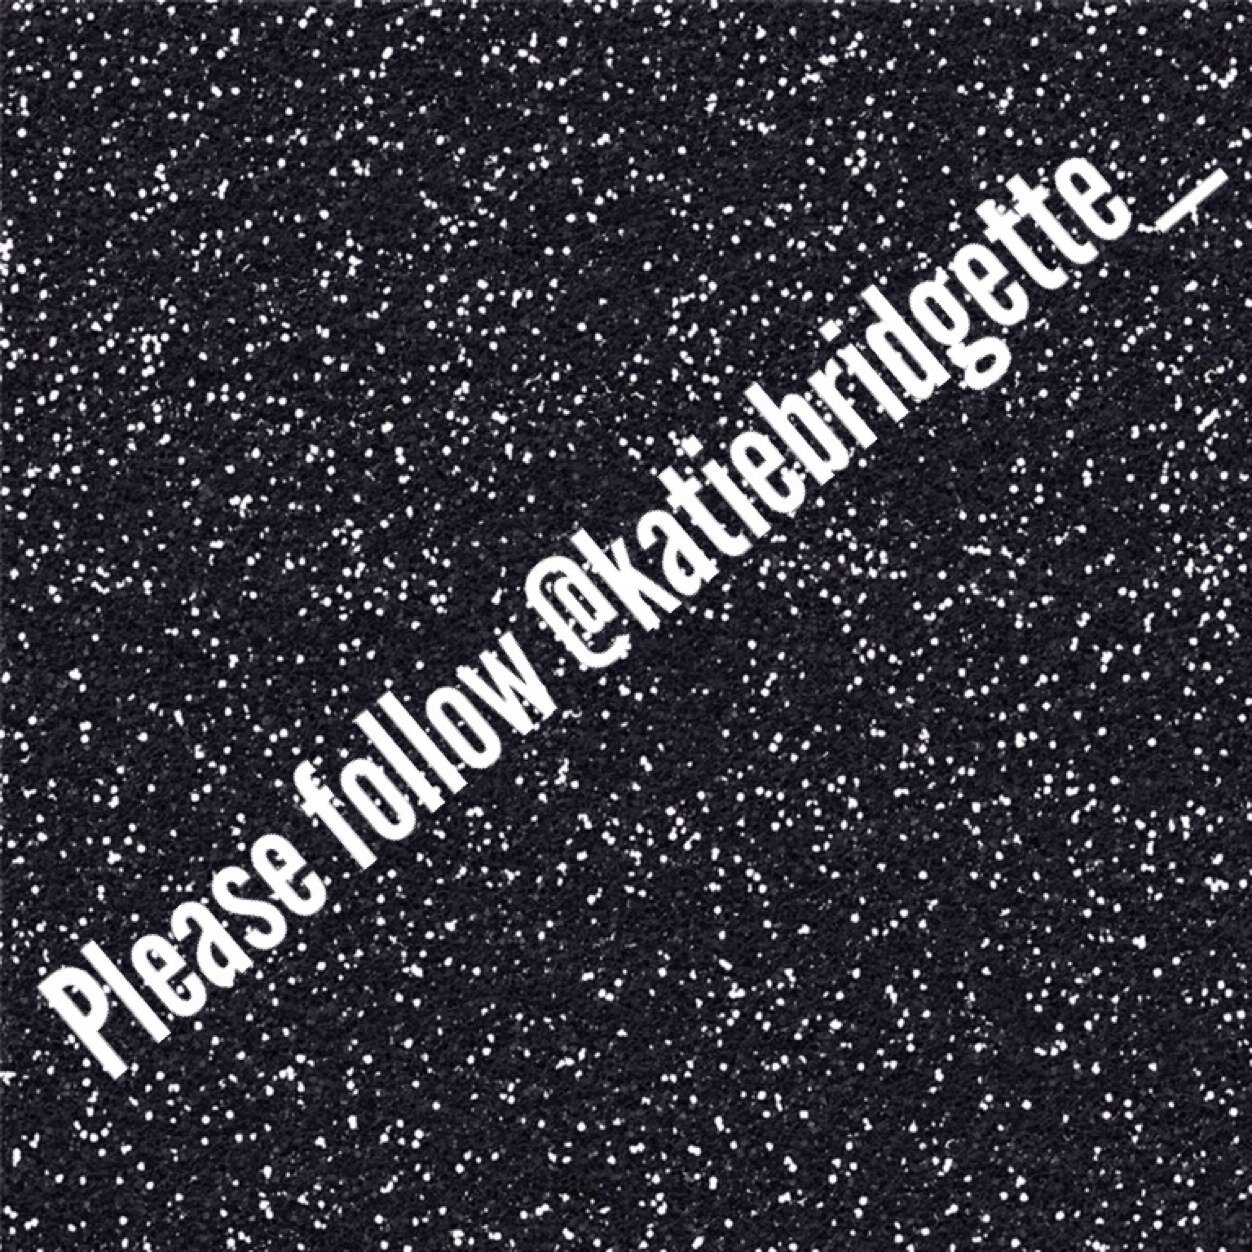 Please follow @katiebridgette_